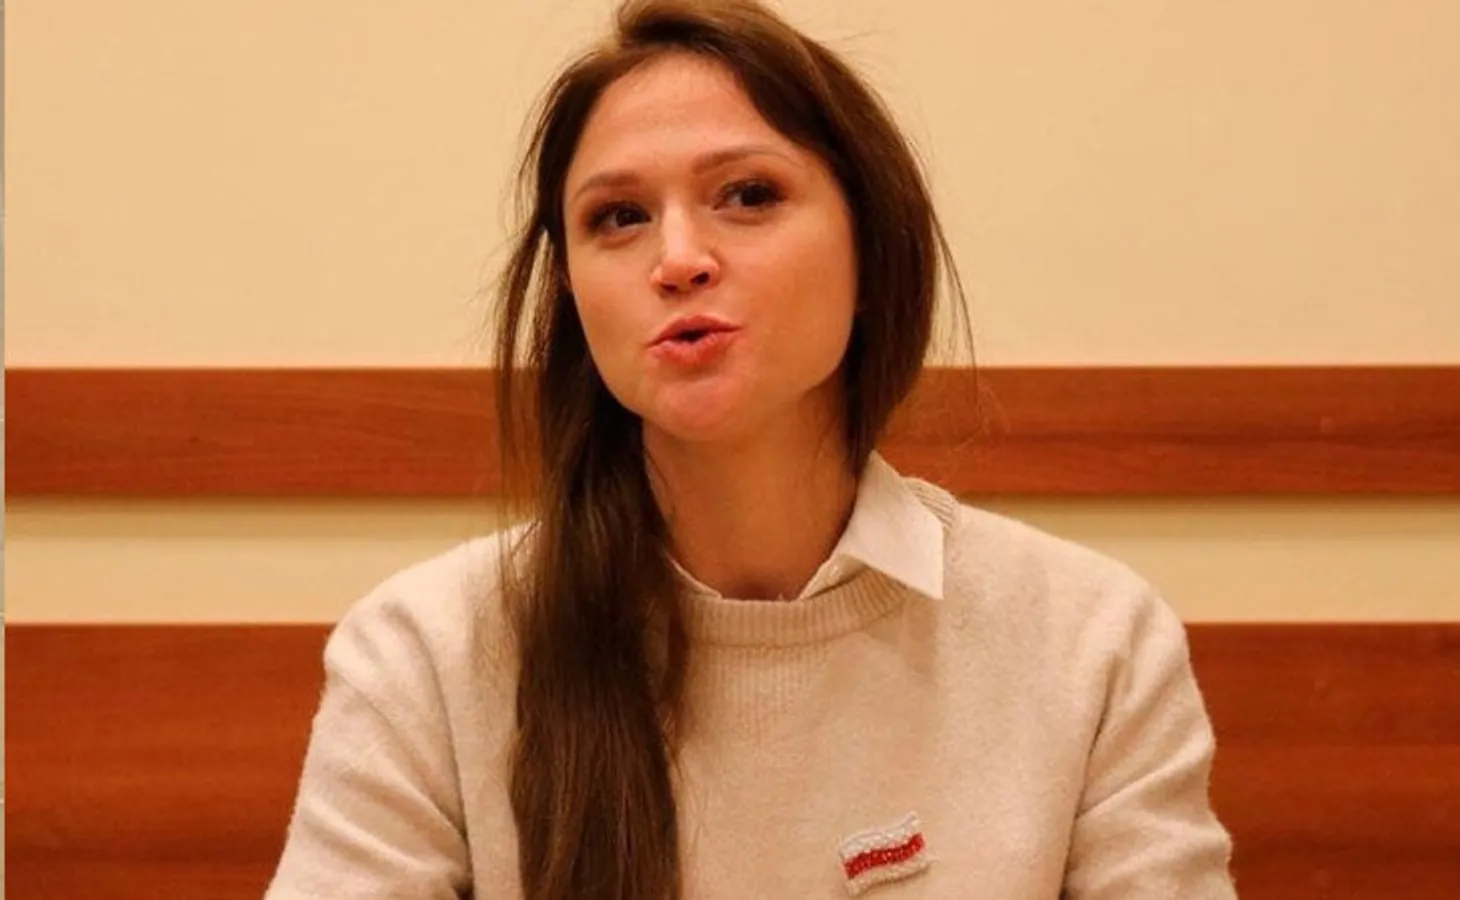 Беларуска Герасименя со слезами вспомнила, как покидала Украину: рядом рвались бомбы, а дочке объясняли грозой